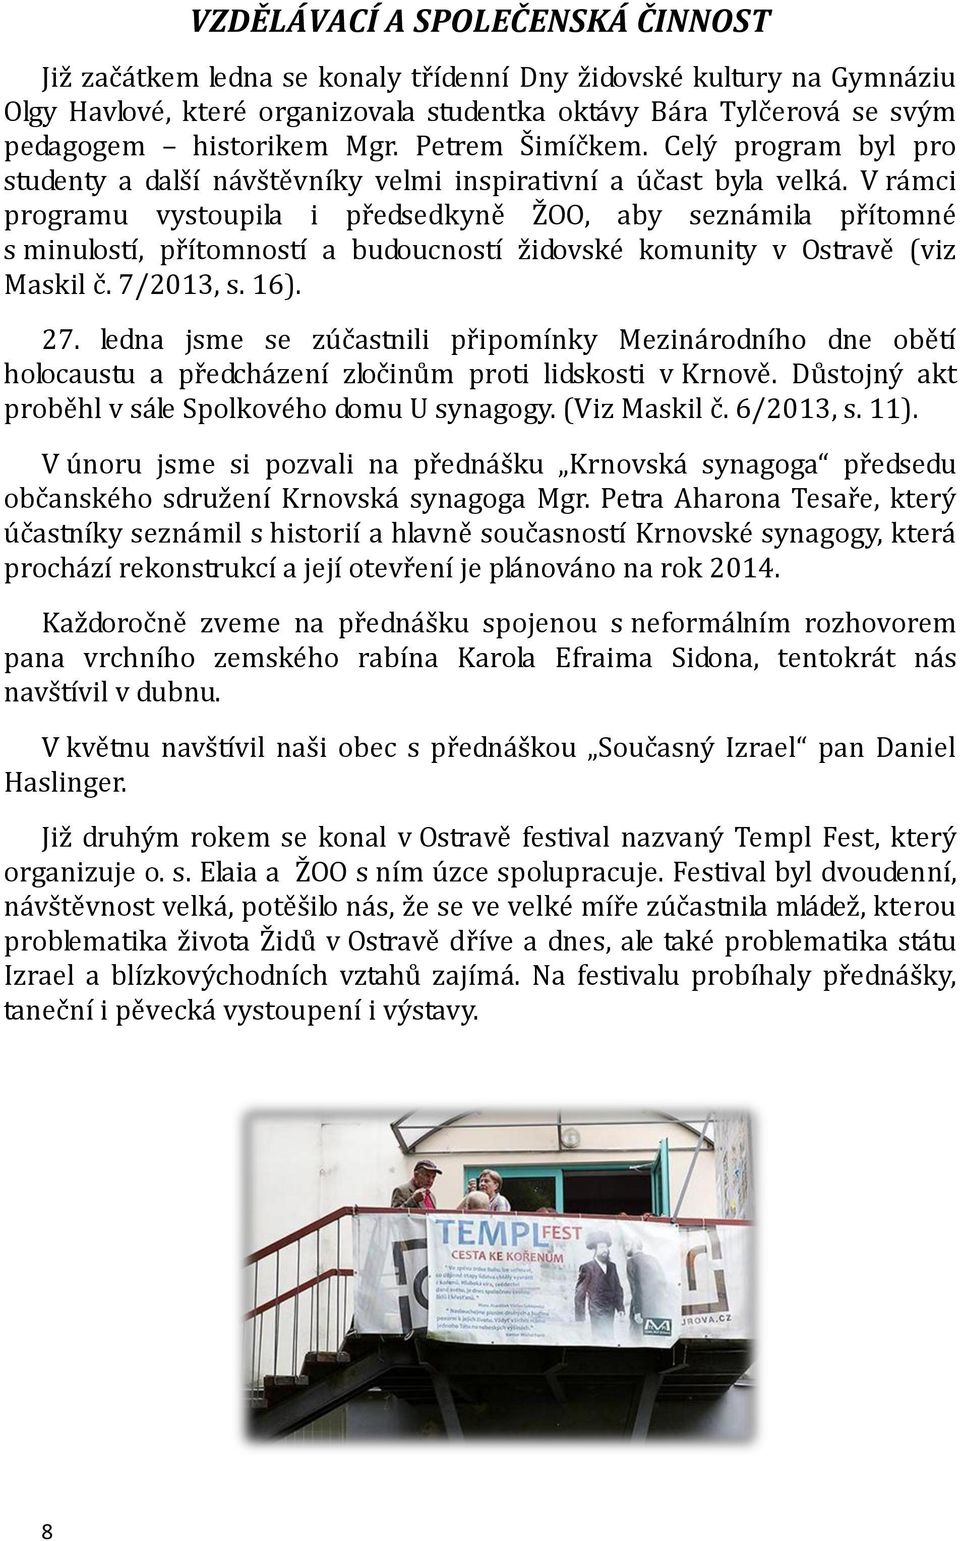 V rámci programu vystoupila i předsedkyně ŽOO, aby seznámila přítomné s minulostí, přítomností a budoucností židovské komunity v Ostravě (viz Maskil č. 7/2013, s. 16). 27.